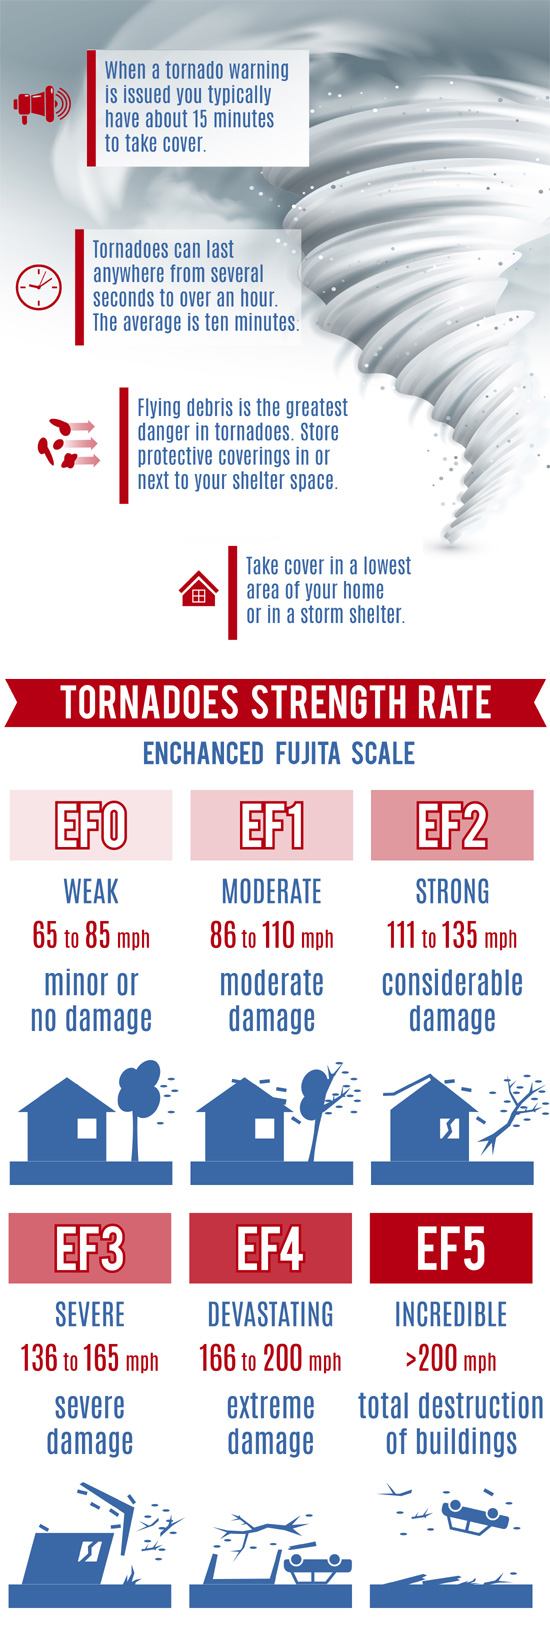 Tornado Strength